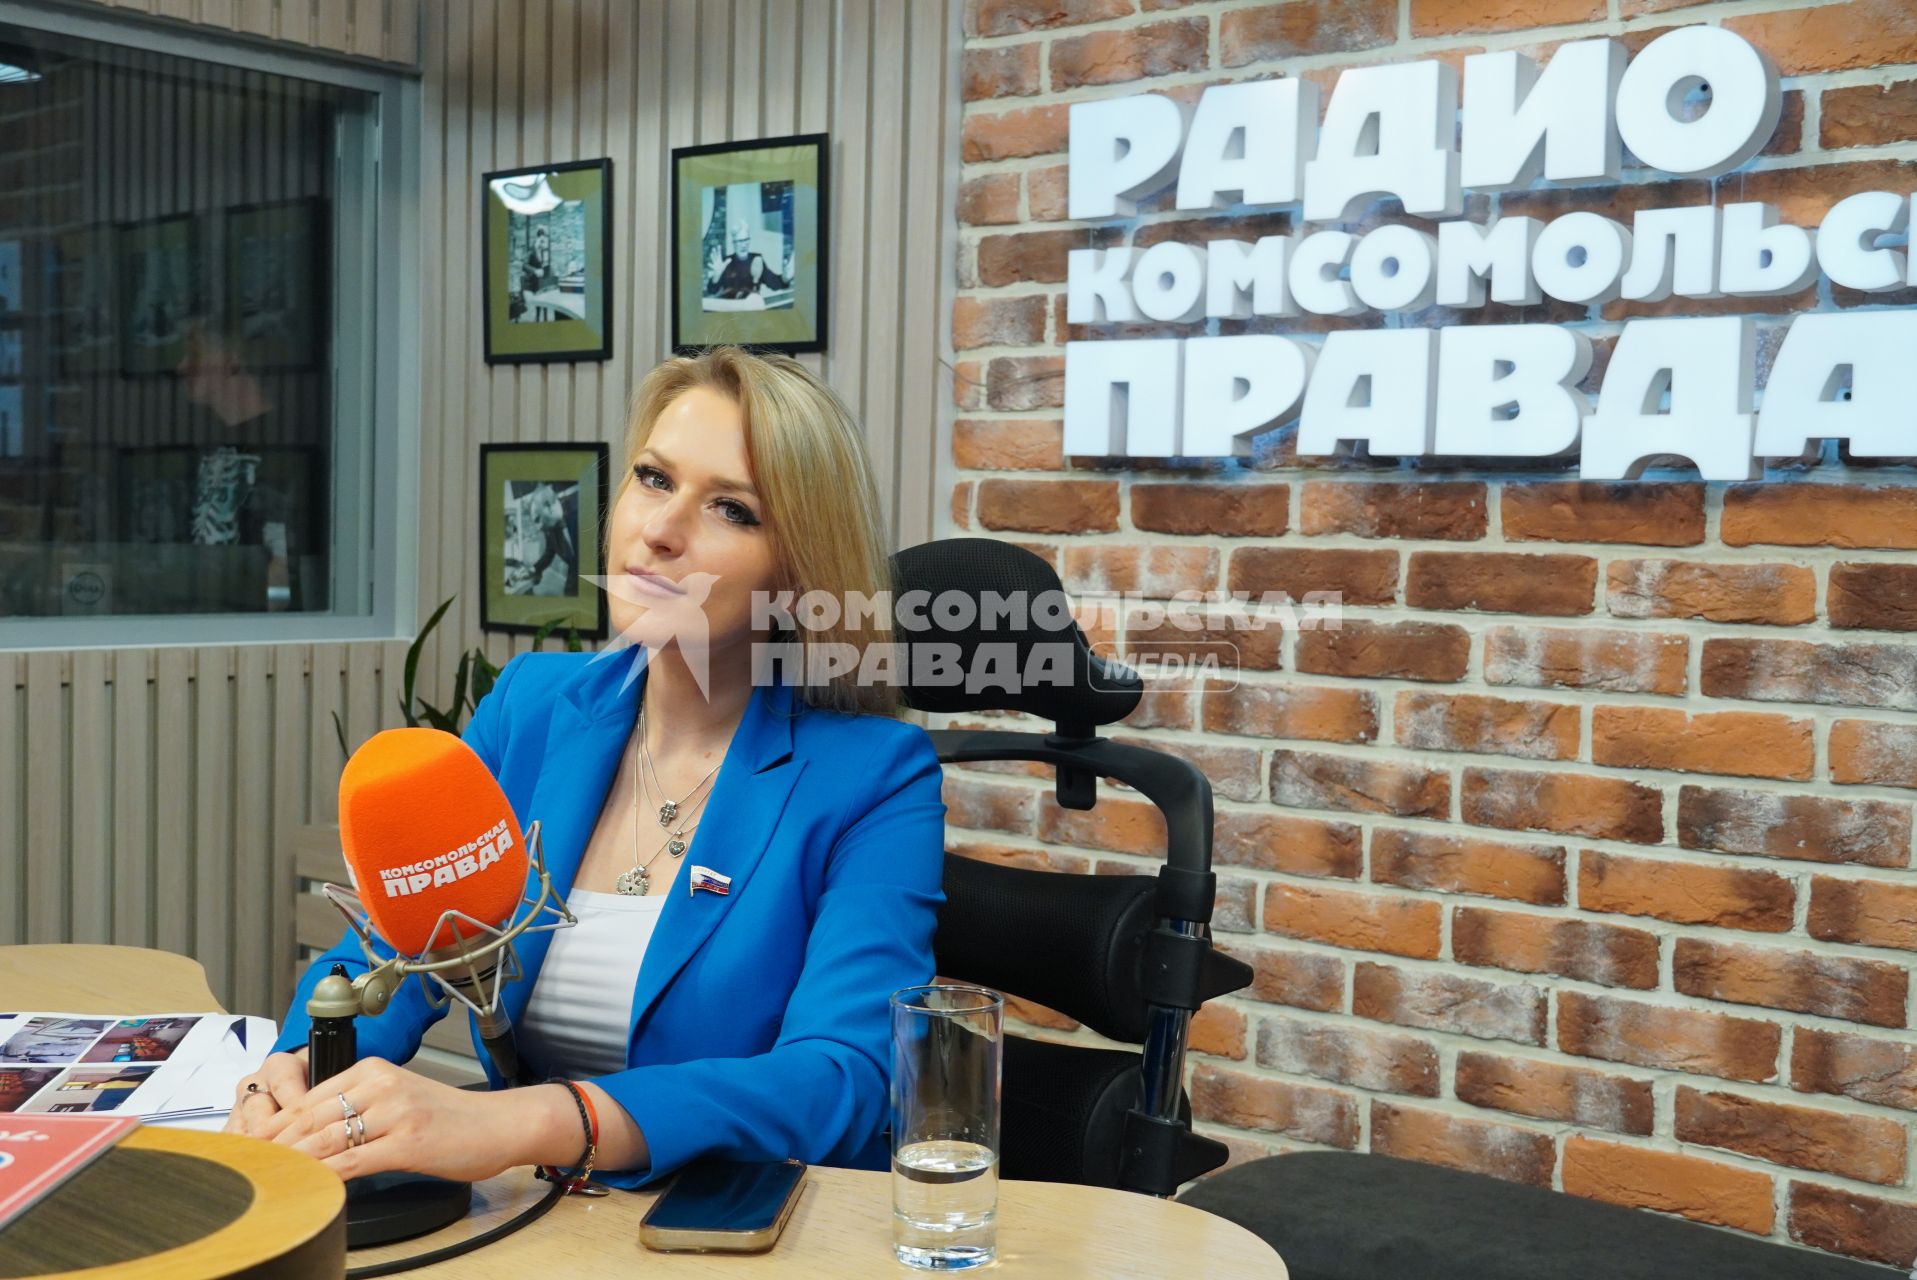 Яна Лантратова на радиостанции `Комсомольская правда`